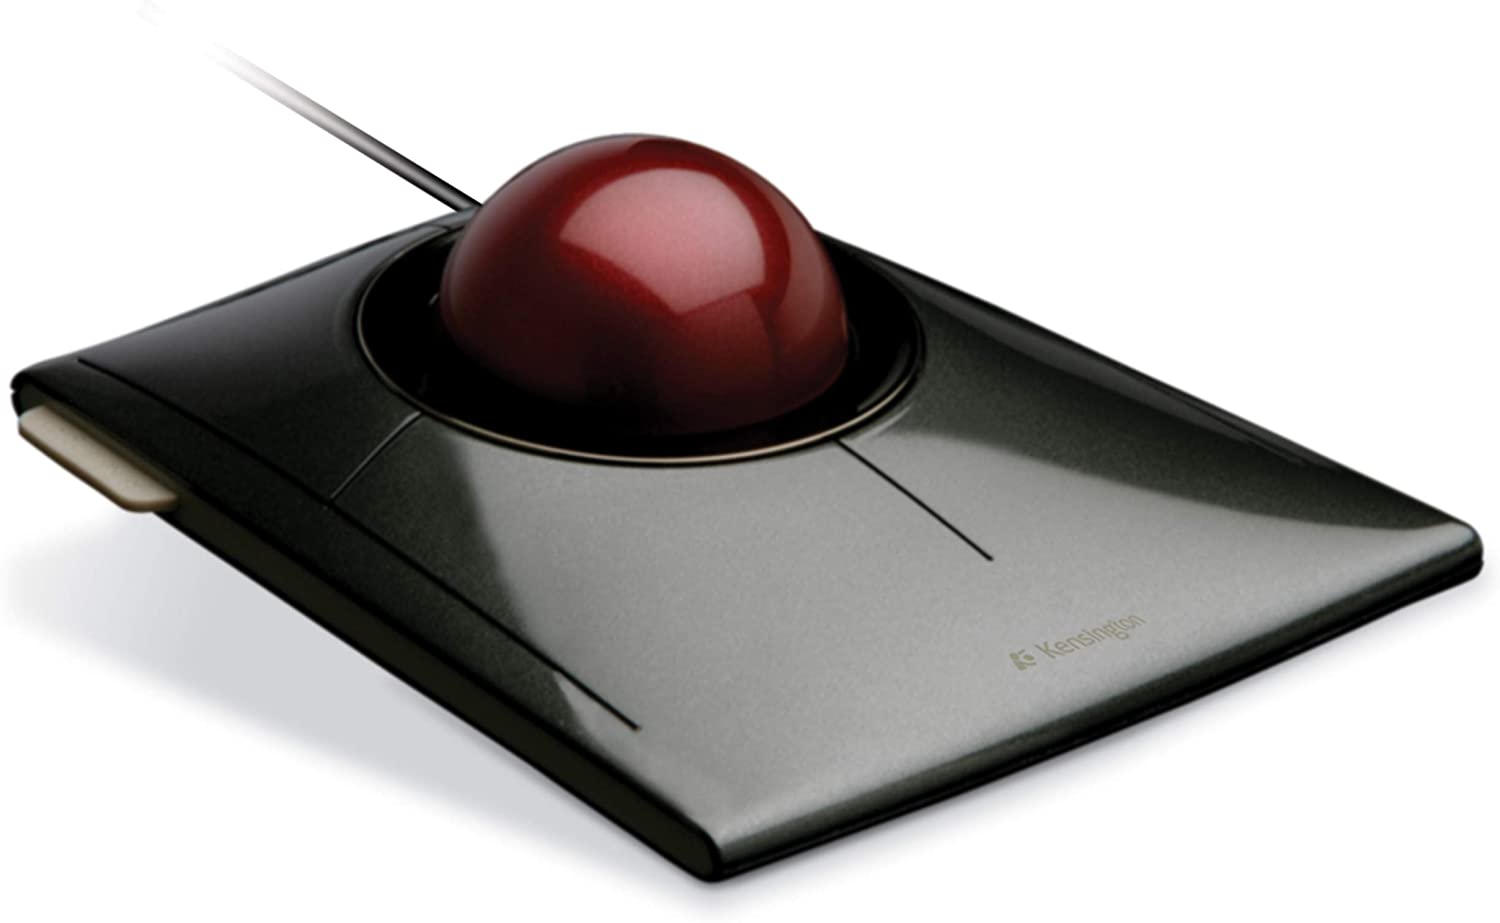 Thumbnail of Kensington SlimBlade Trackball Mouse.